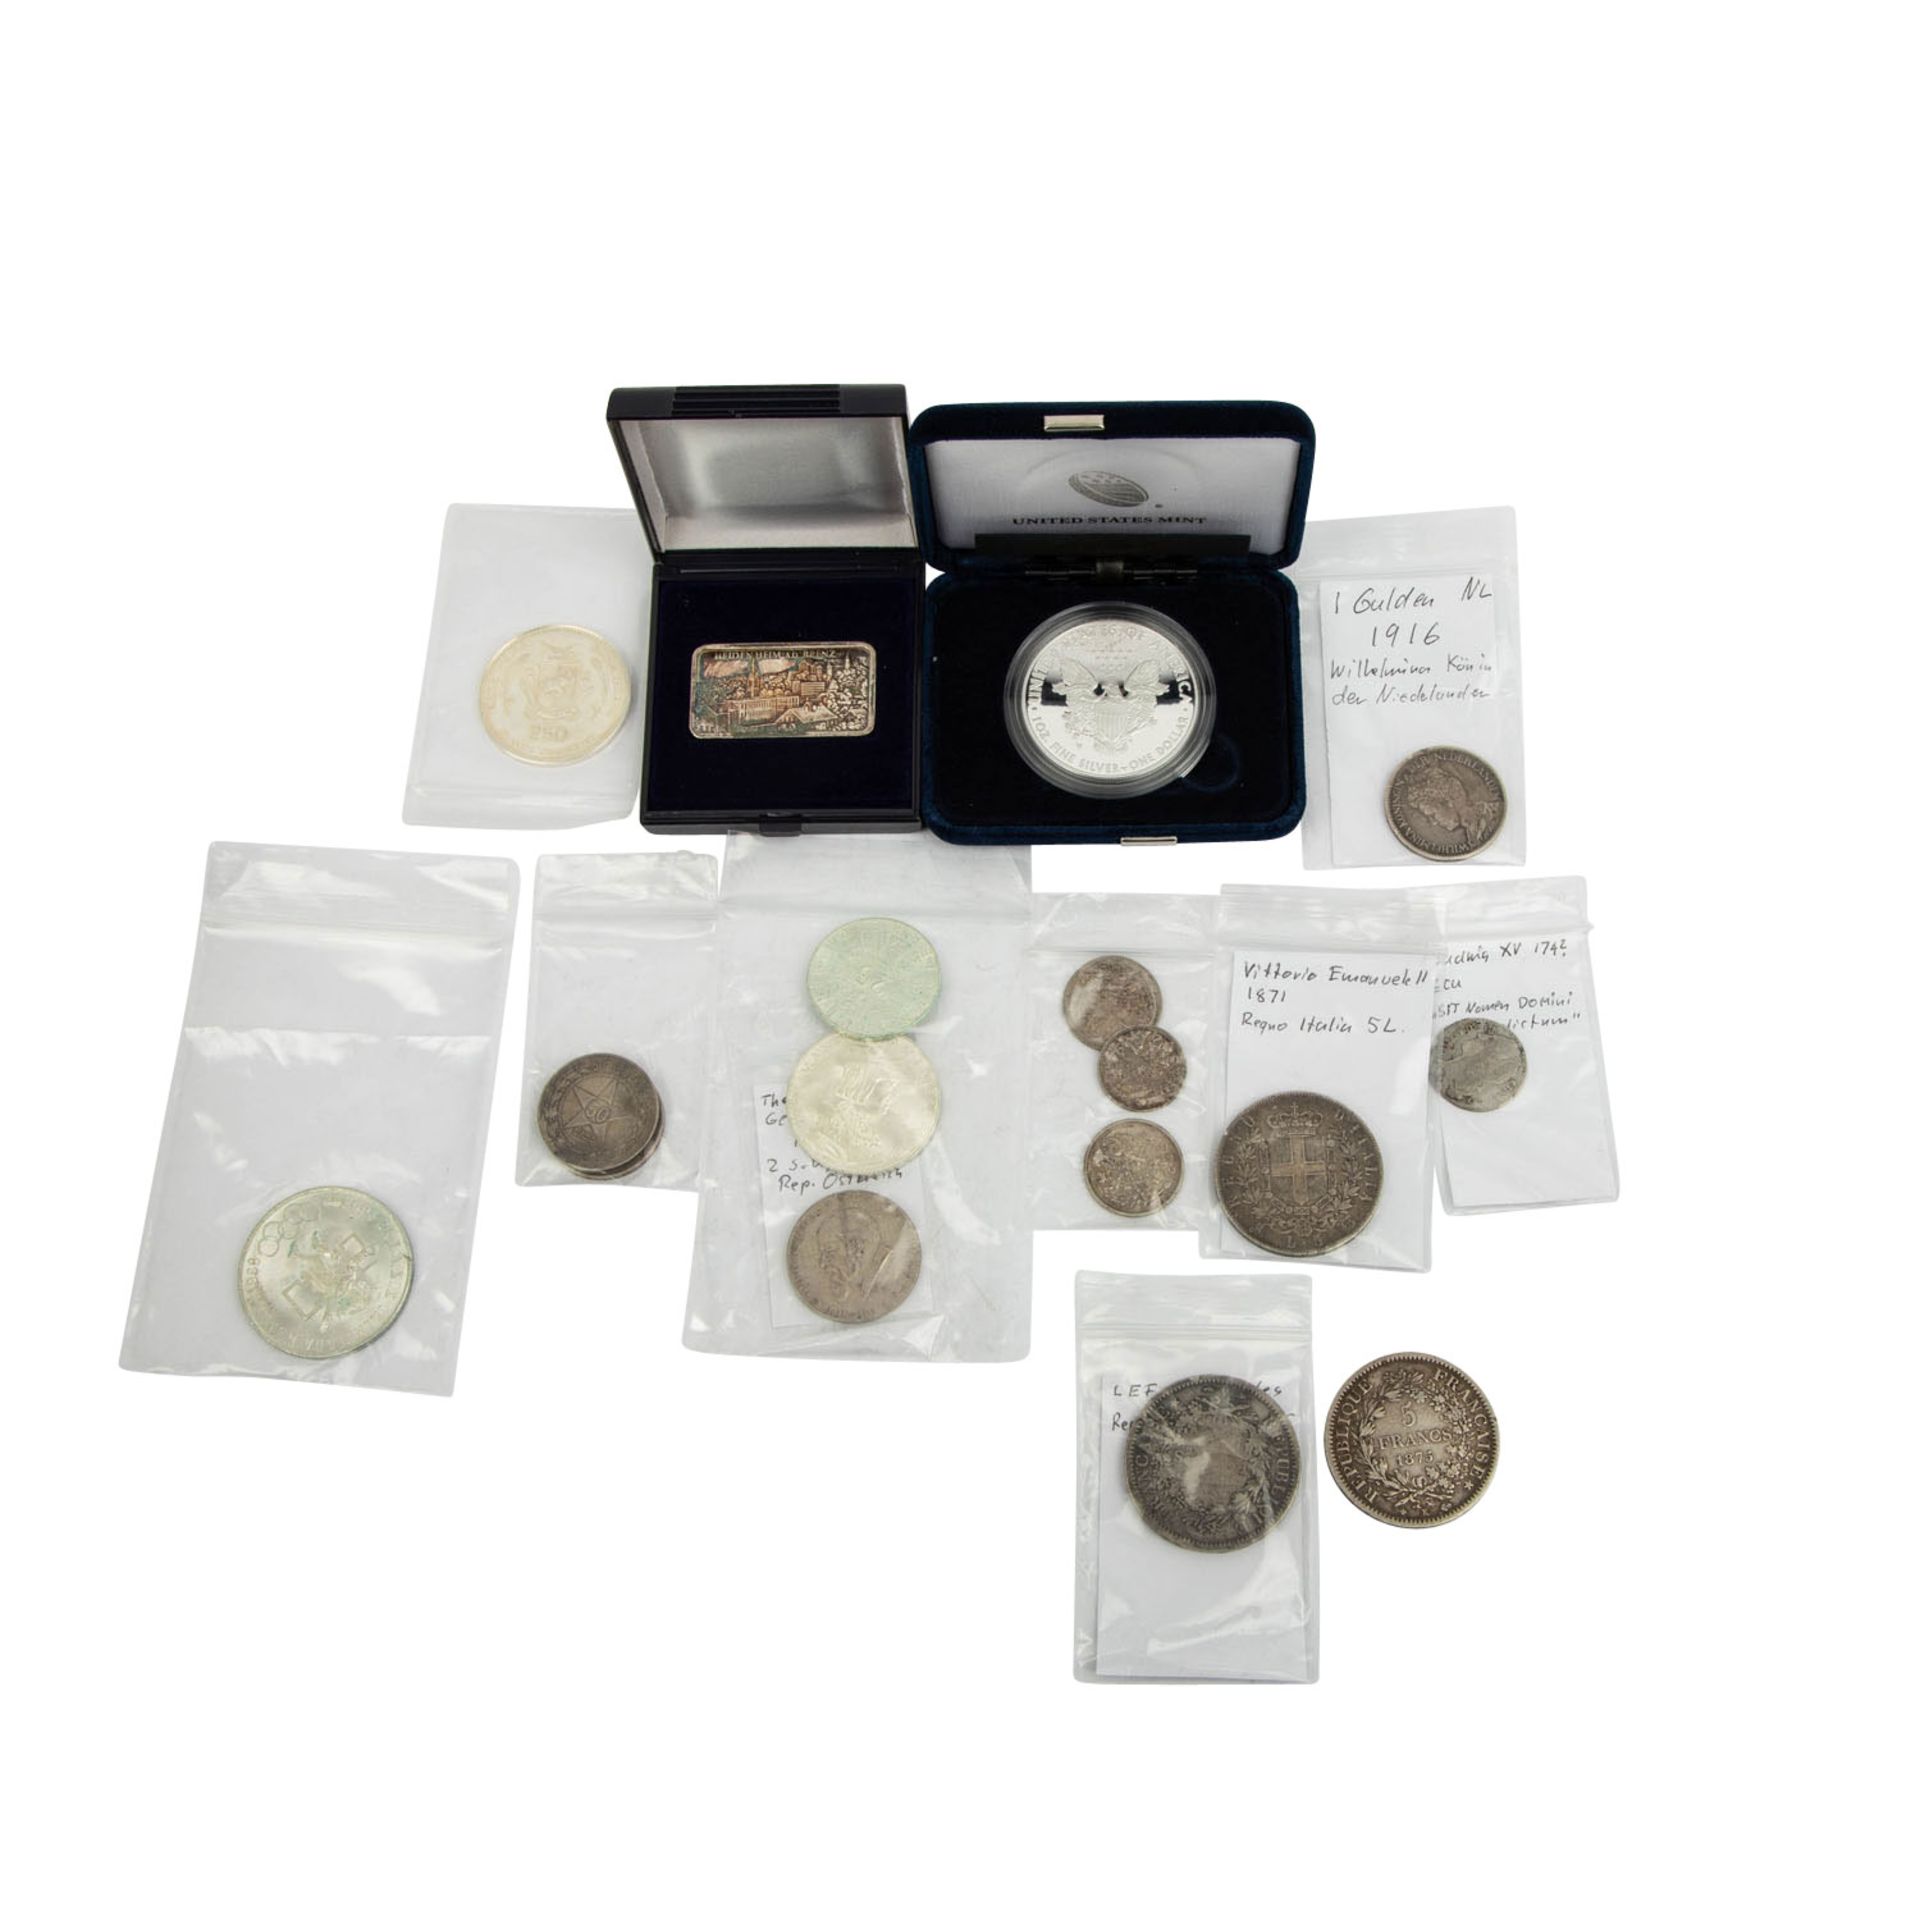 Gemischtes Silber-Konvolut mit vielen Münzen des Dritten Reichs. Ca. 120 Stück. - Image 5 of 5